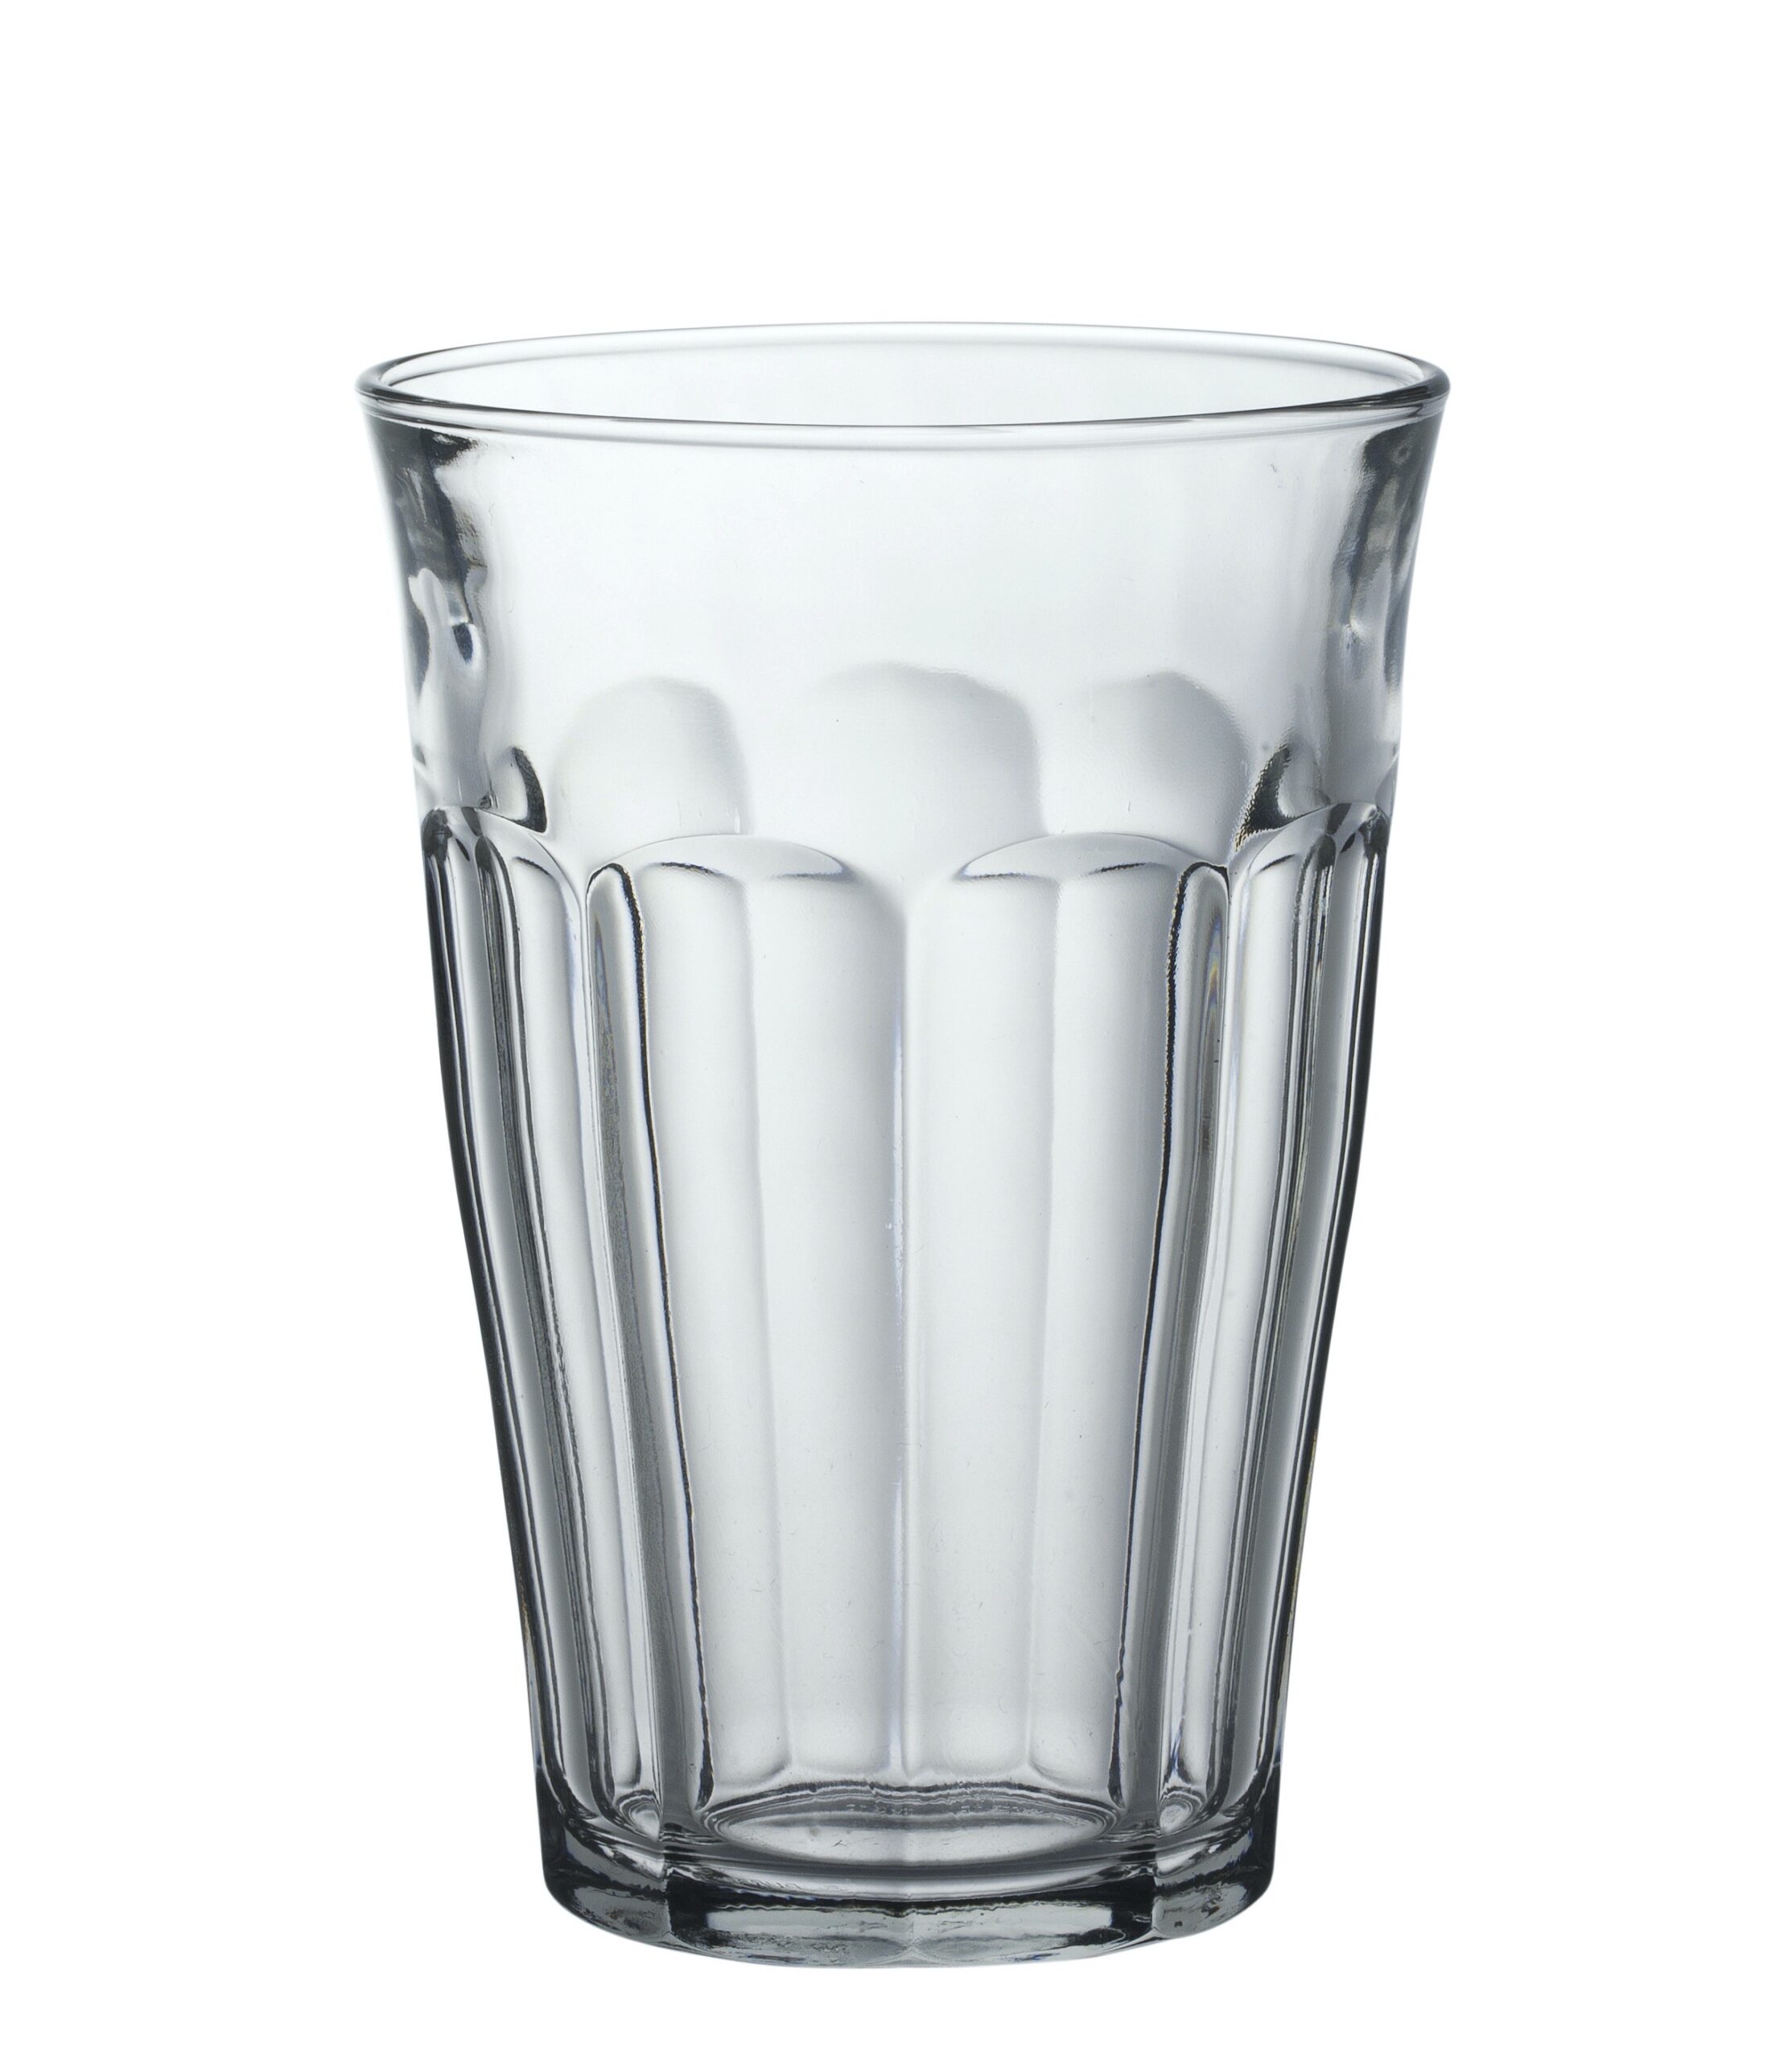 Duralex Picardie Tumbler, Trinkglas, 360ml, mit Füllstrich bei 0.2l, Glas gehärtet, transparent, 6 Stück